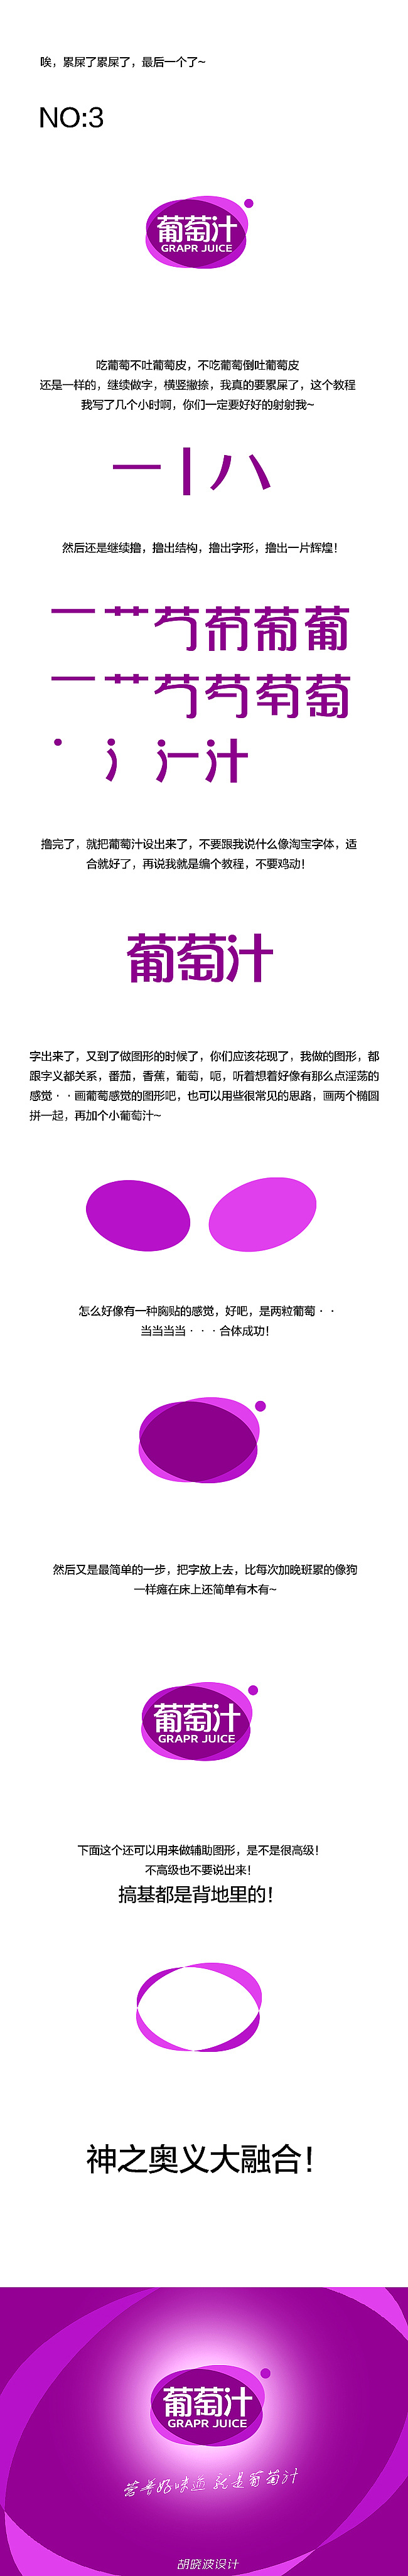 胡晓波字体设计第十妓（字体教程）